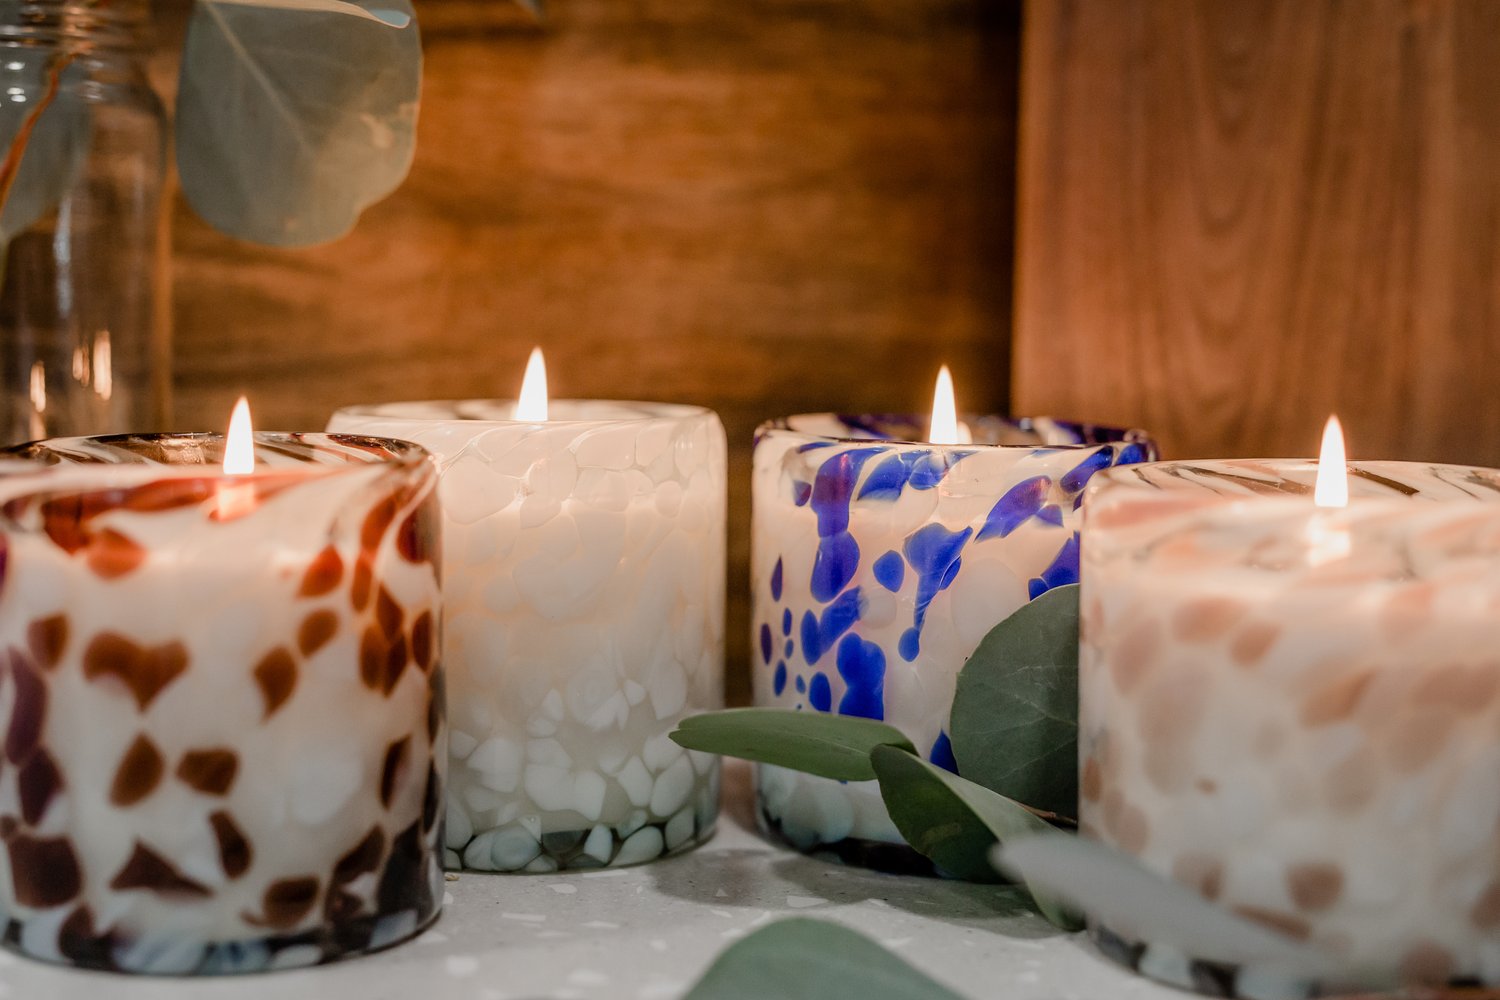 Vanilla Wax Melts – JG & CO. Handcrafted Natural Artisan Candles